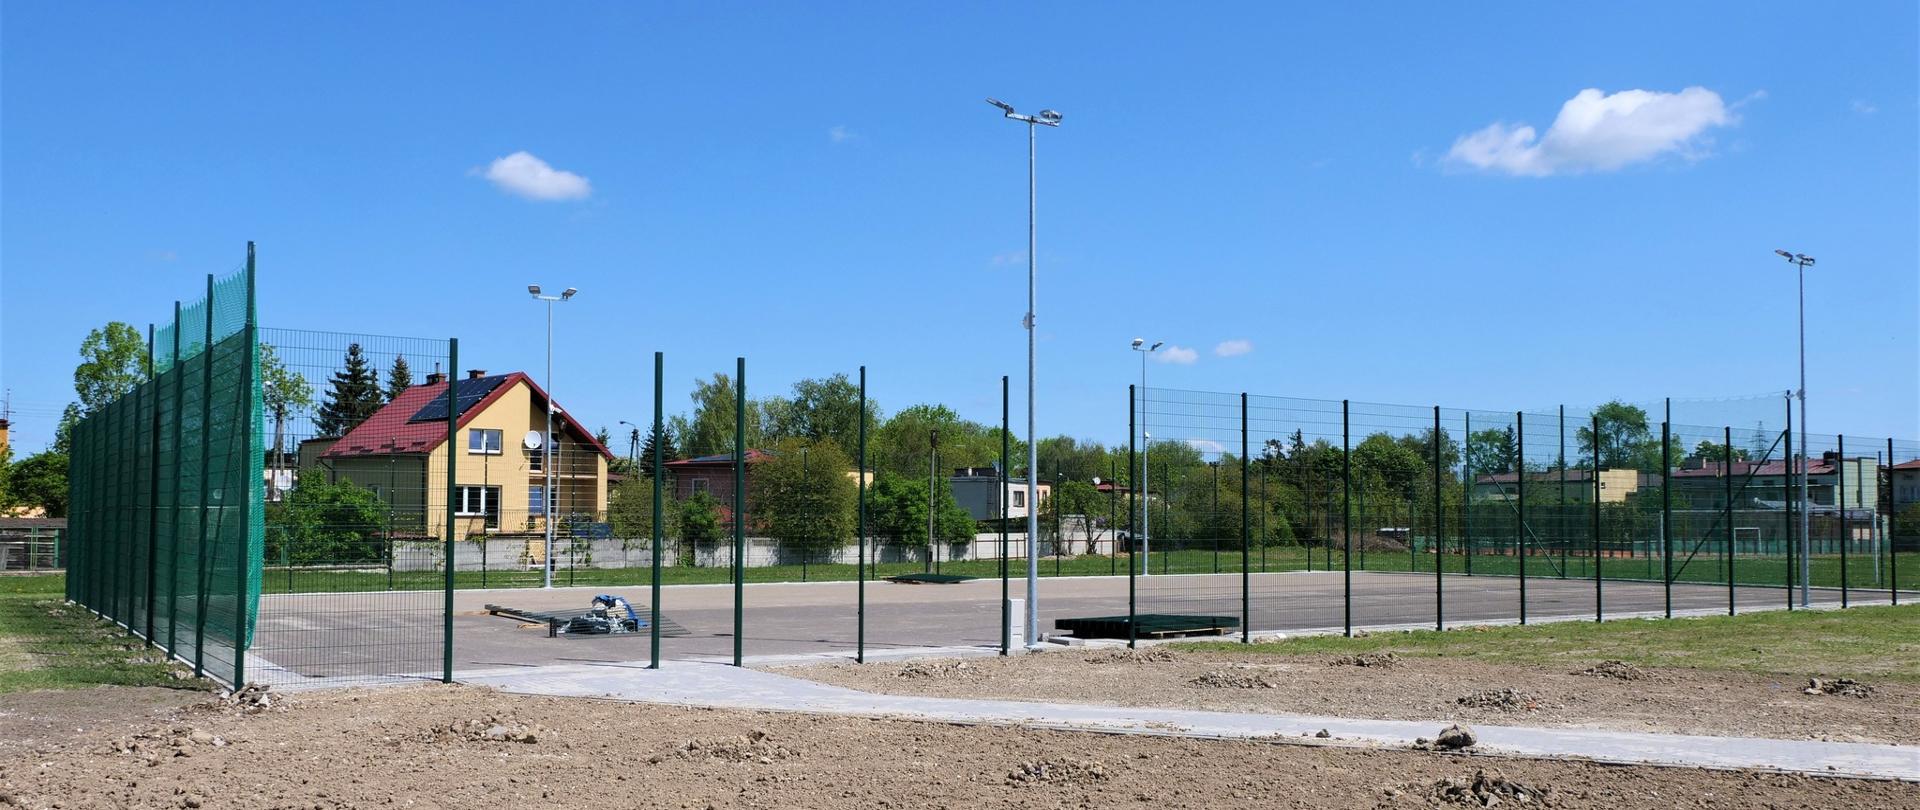 Zdjęcie przedstawia budowę boiska. Boisko ogrodzone siatką, a na powierzchni wylany jest asfalt. Boisko otoczone jest usypaną ziemią.